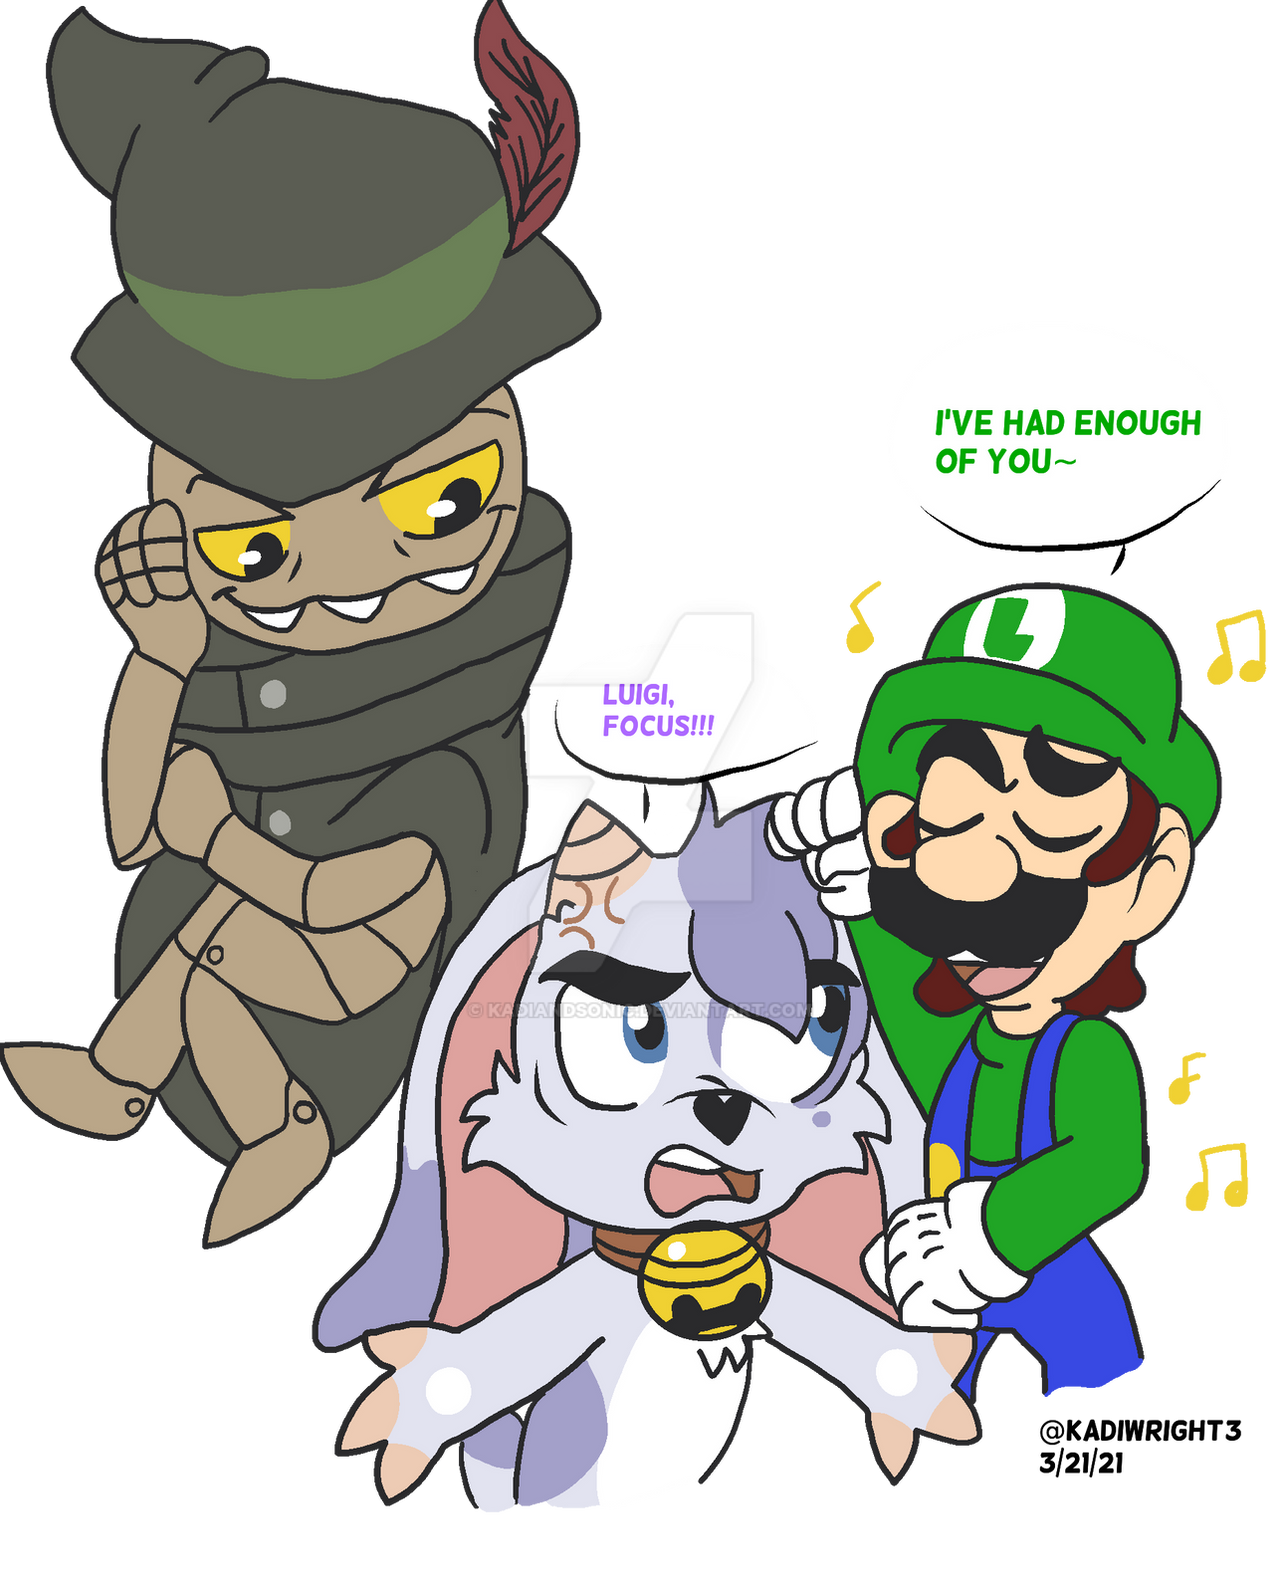 Luigi Plays Cat Mario - Part 1